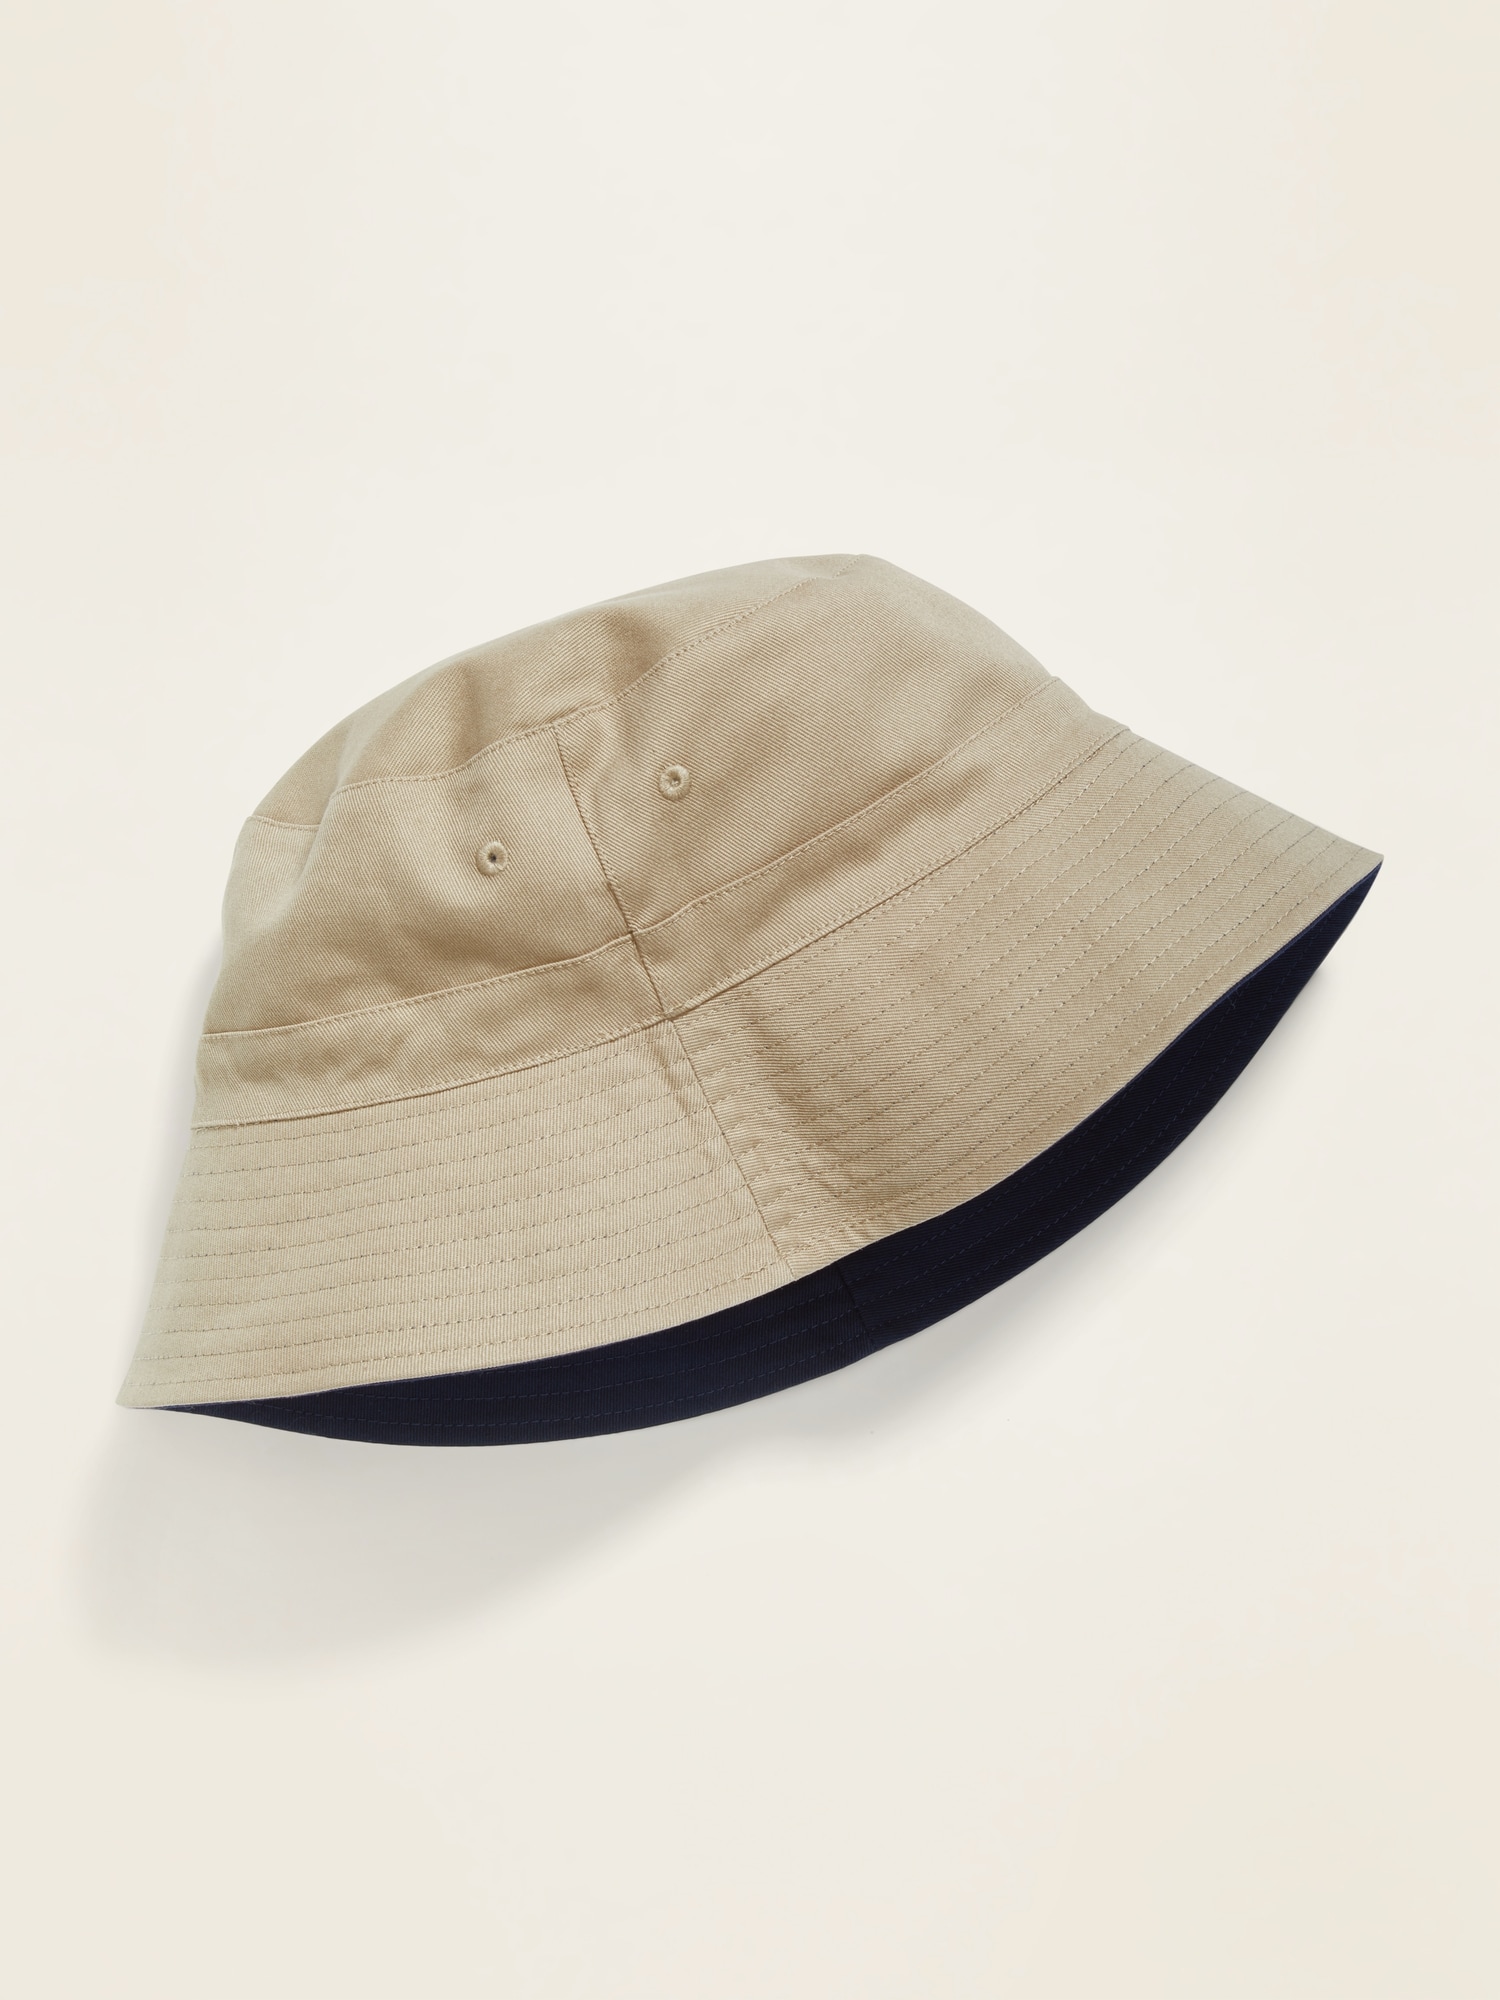 Levis Mens Reversible Bucket Hat Size: L/XL Navy/Blue 100% Cotton